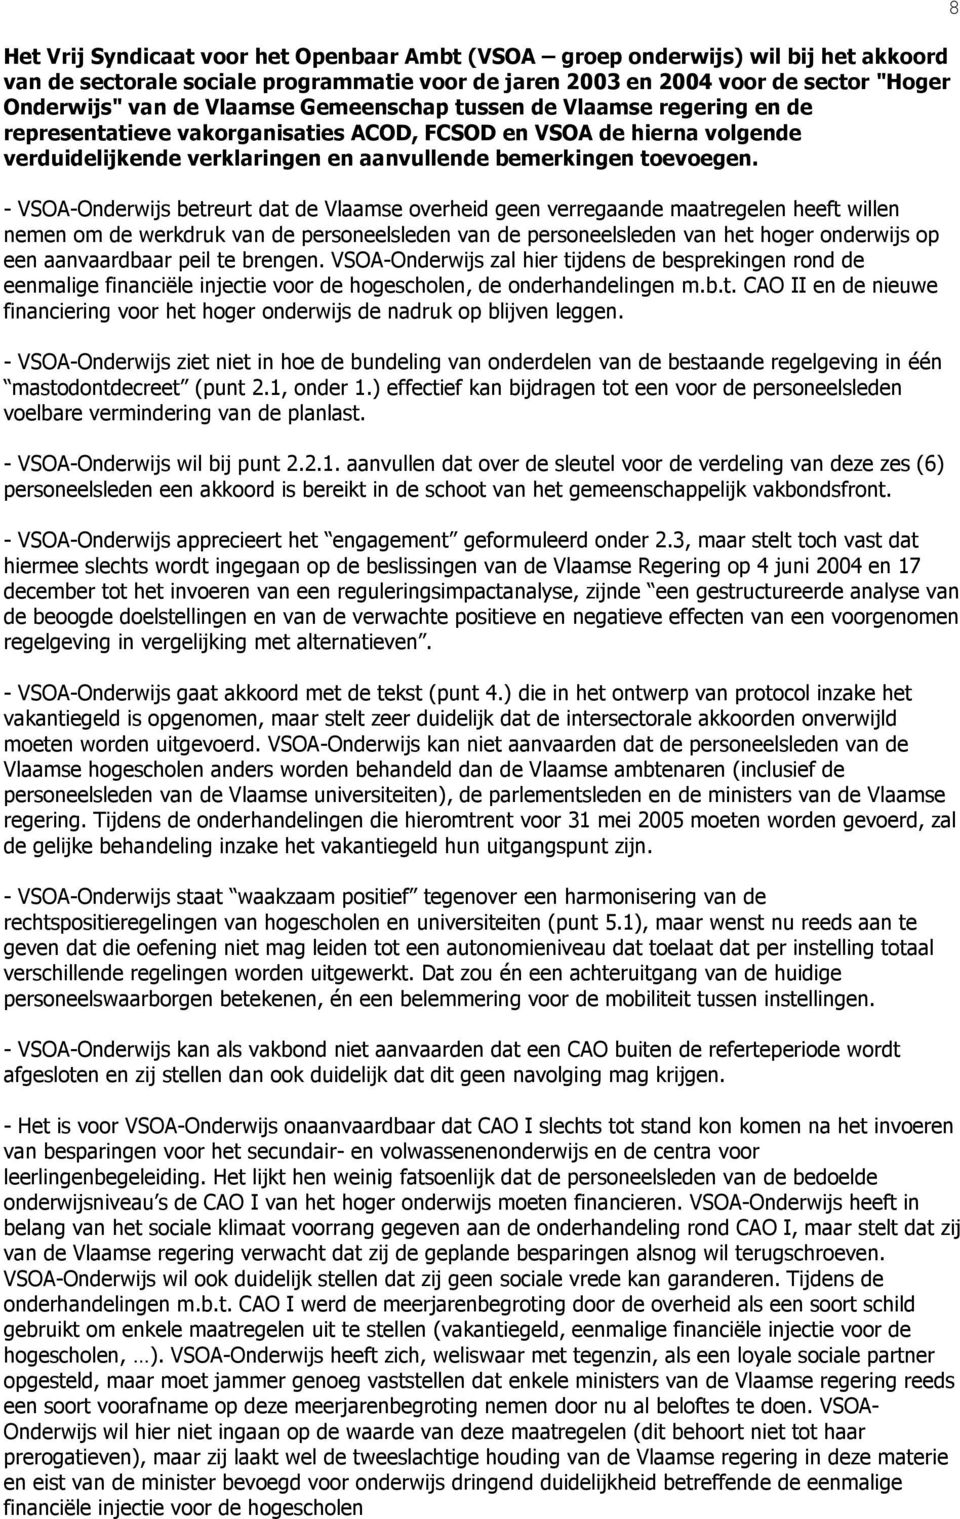 - VSOA-Onderwijs betreurt dat de Vlaamse overheid geen verregaande maatregelen heeft willen nemen om de werkdruk van de personeelsleden van de personeelsleden van het hoger onderwijs op een